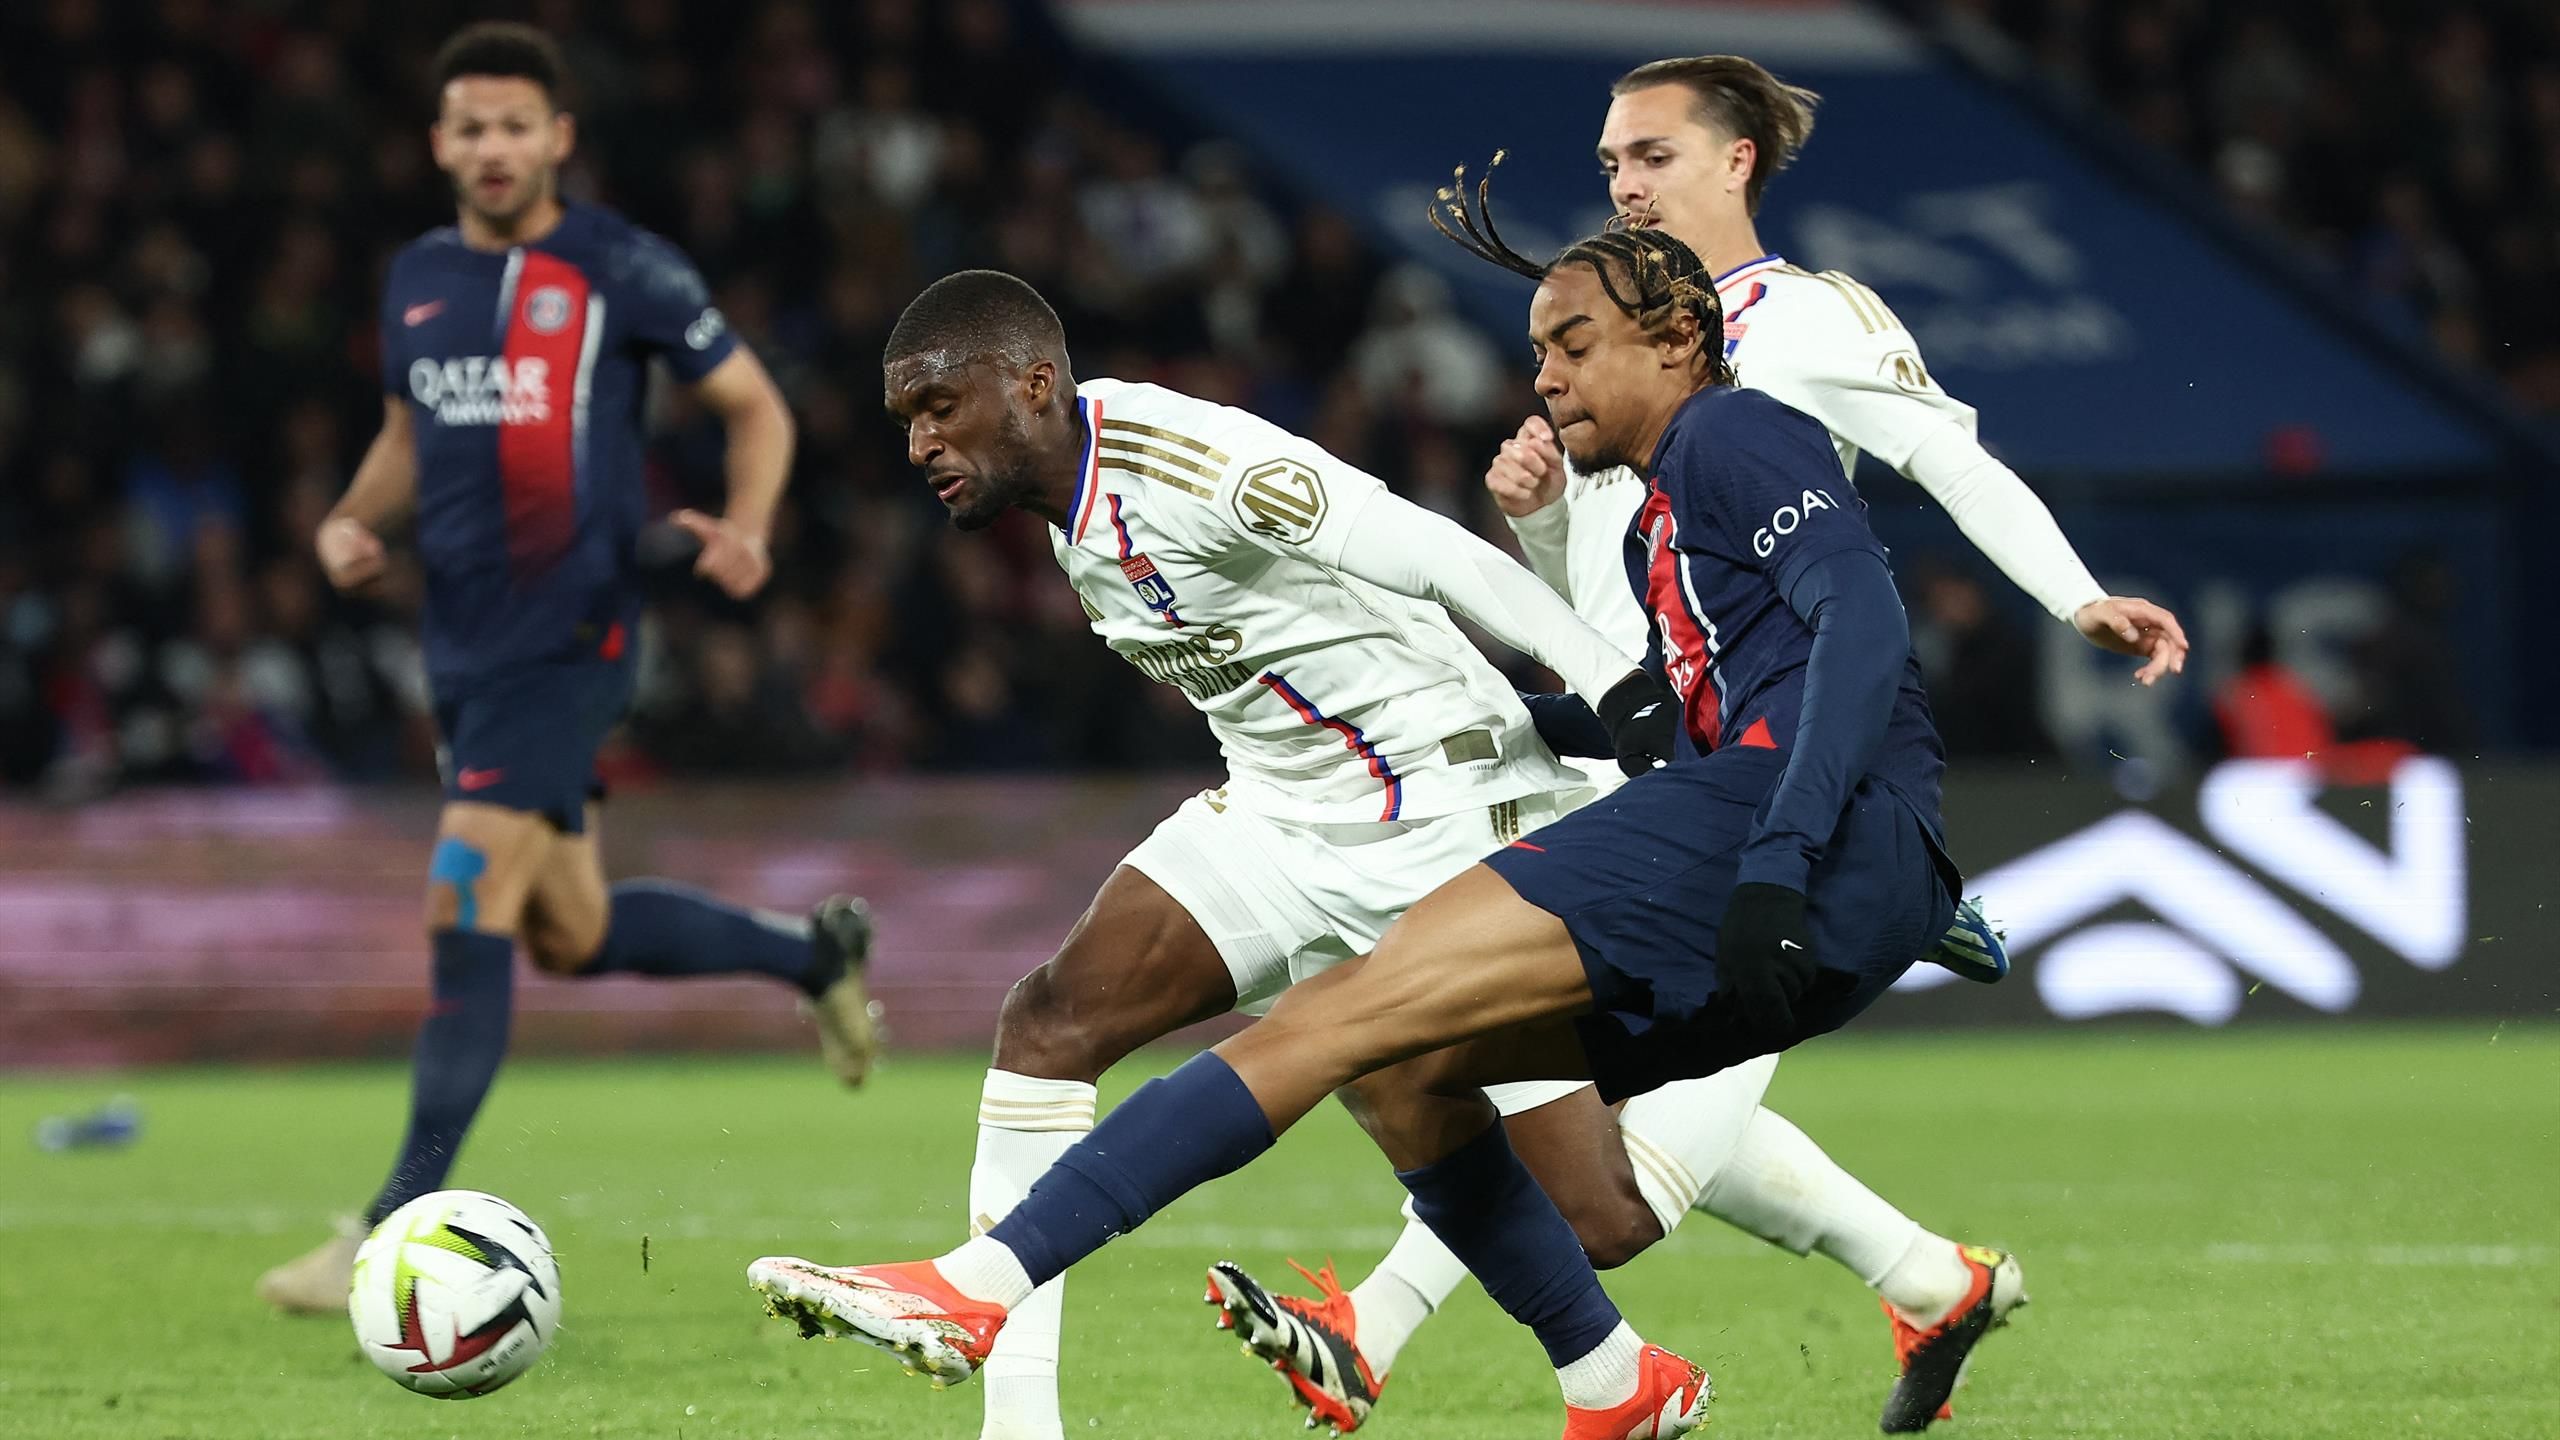 Paris Saint-Germain – OL – Barcola ha fatto tutto per loro, Kolo Mwani non è stato invitato alla festa: gli alti e bassi del Paris Saint-Germain – Lione